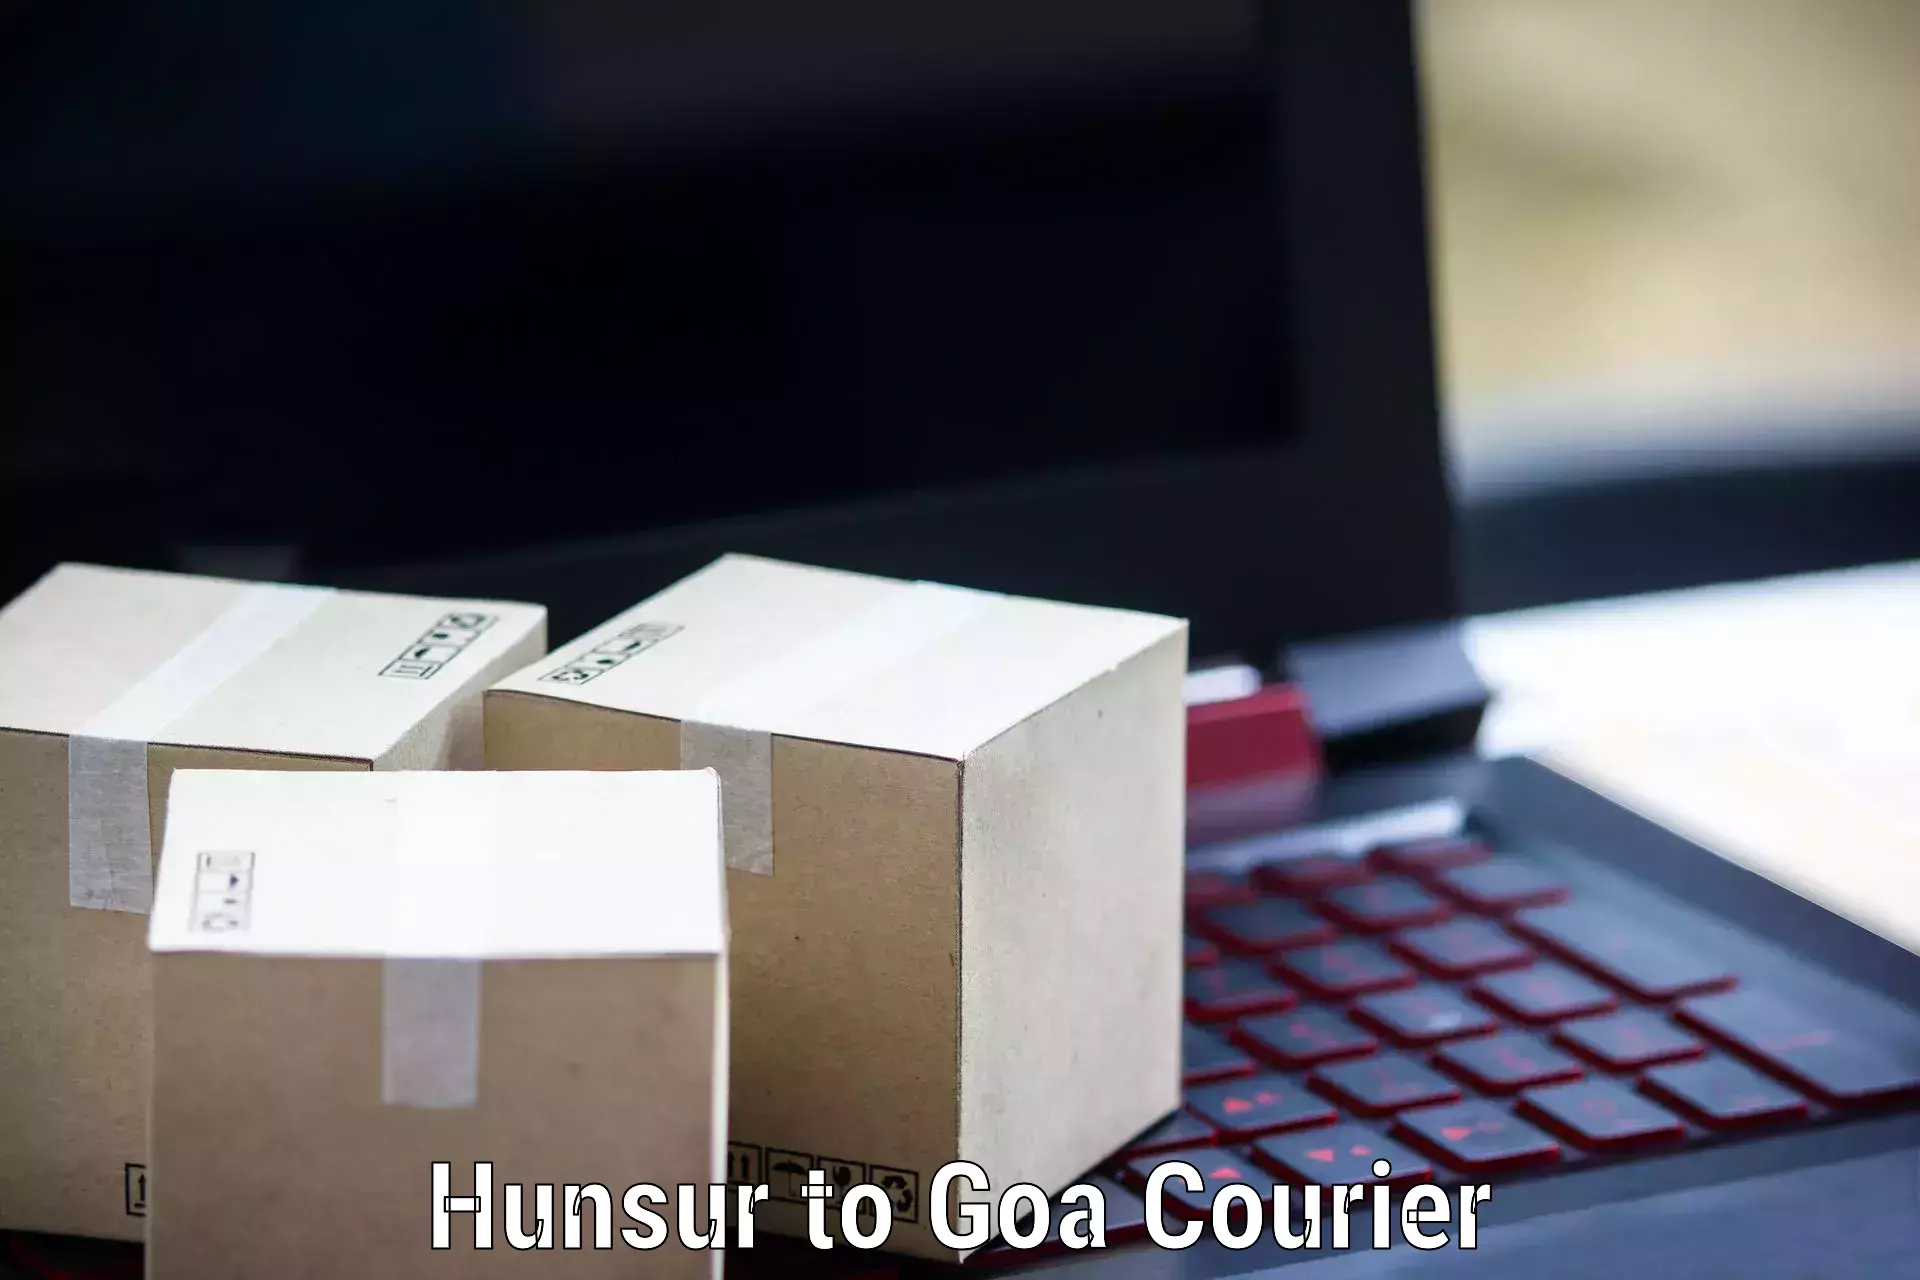 Courier service innovation Hunsur to Goa University